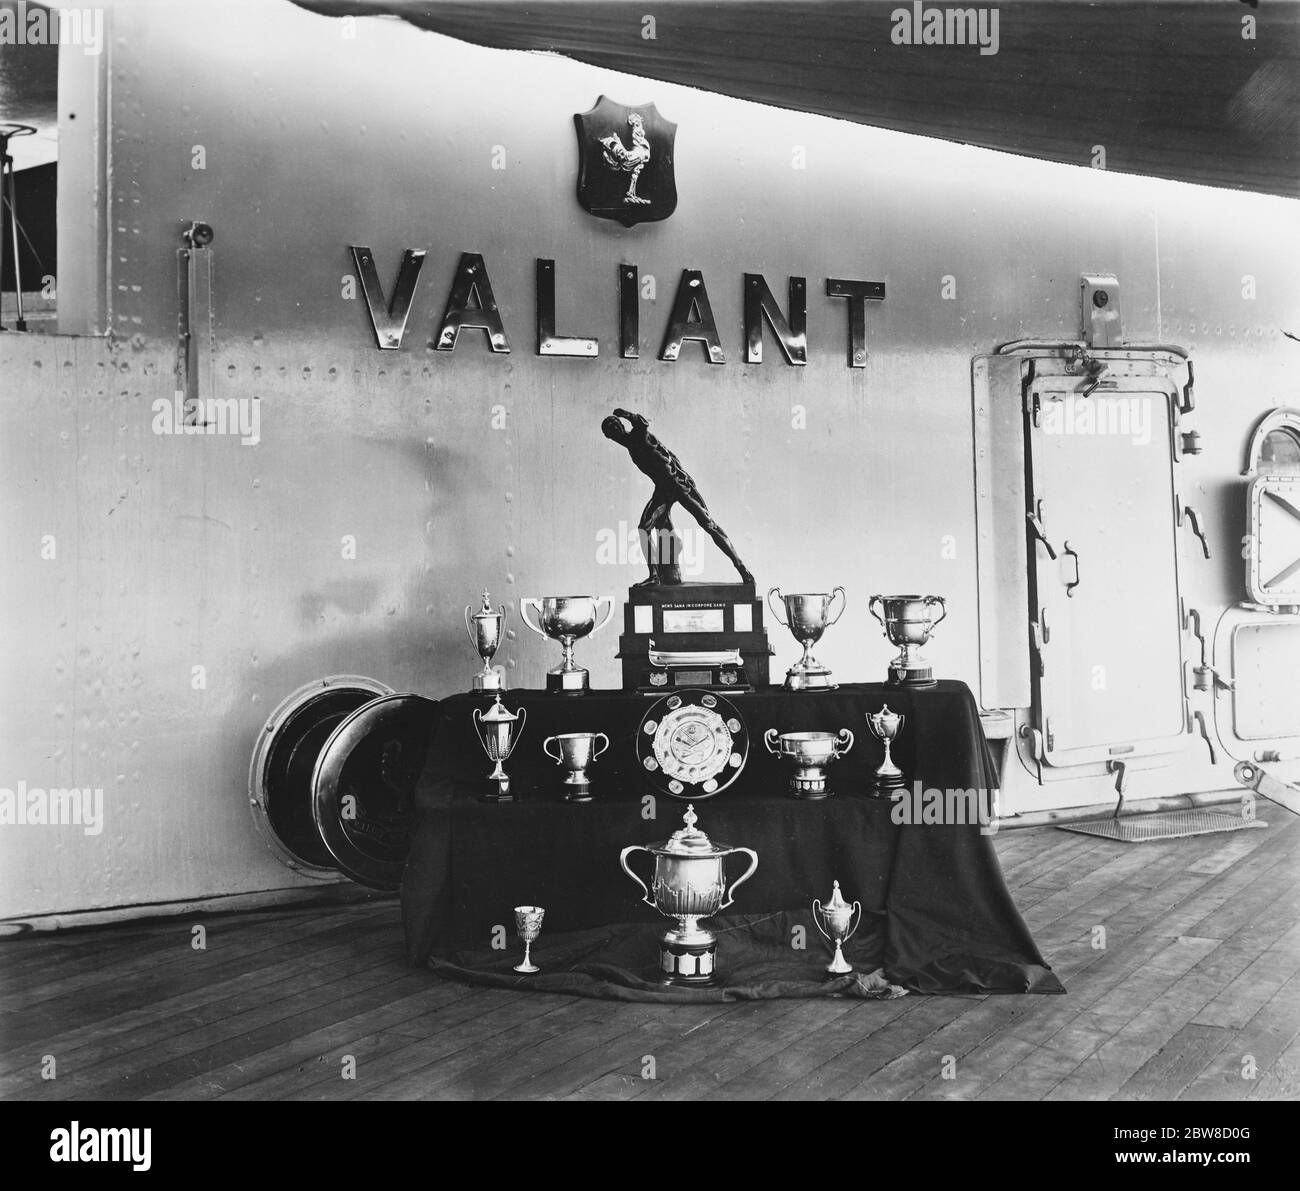 Fin de quatre ans , commission , de nombreux trophées remportés par HMS Valiant . Le cuirassé Valiant est revenu à Plymouth avec la distinction d'avoir été en fonction depuis plus de quatre ans . Pendant cette période, le Valiant a gagné une haute réputation par ses succès pour la timitrerie , le tir à la carabine et les compétitions sportives en général . Certains des trophées remportés par HMS Valiant . 25 février 1927 Banque D'Images